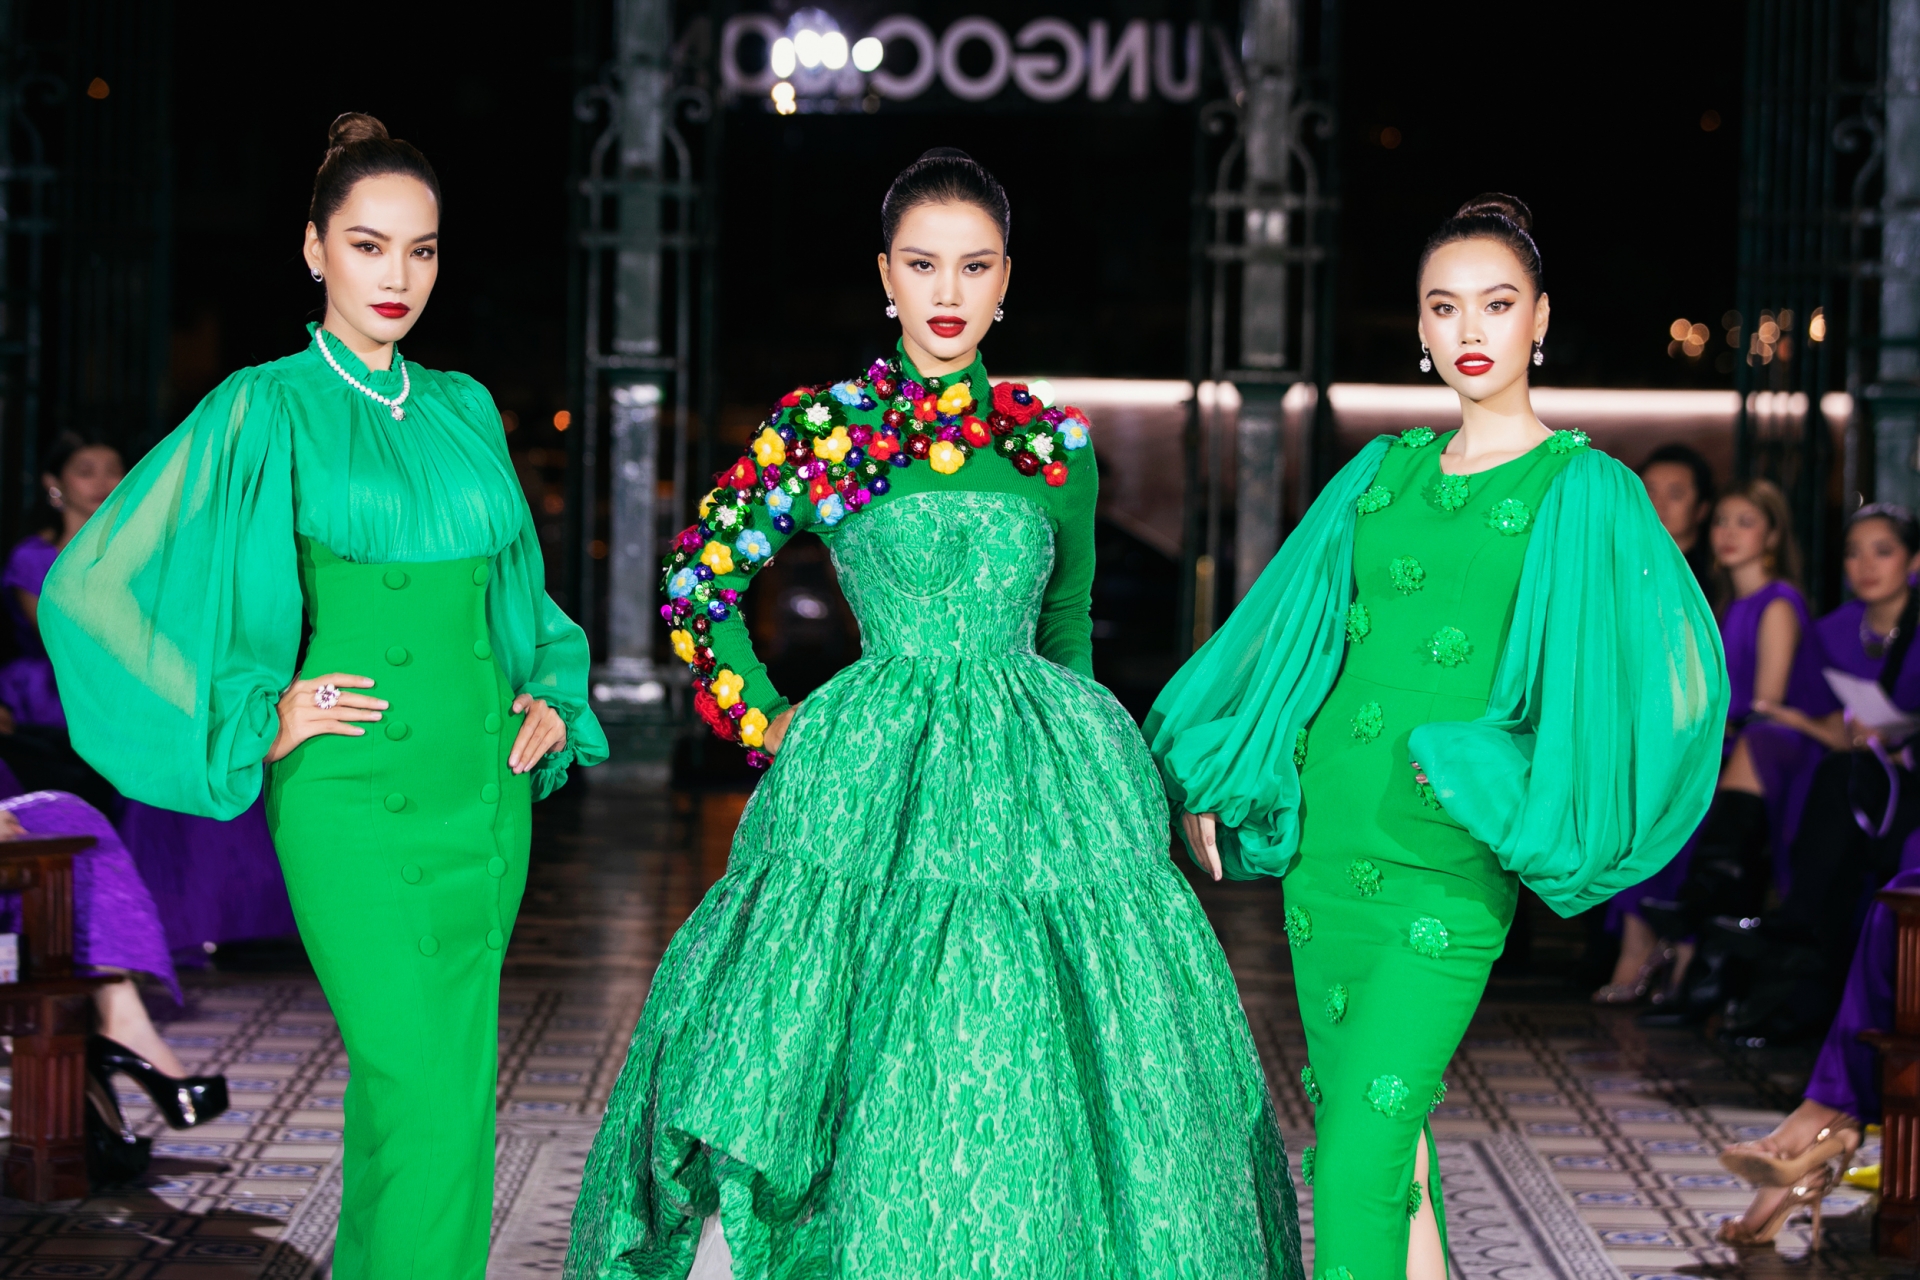 Đỗ Hà, Mai Phương, Lương Thuỳ Linh diễn thời trang trong show của Vũ Ngọc&Son - 5